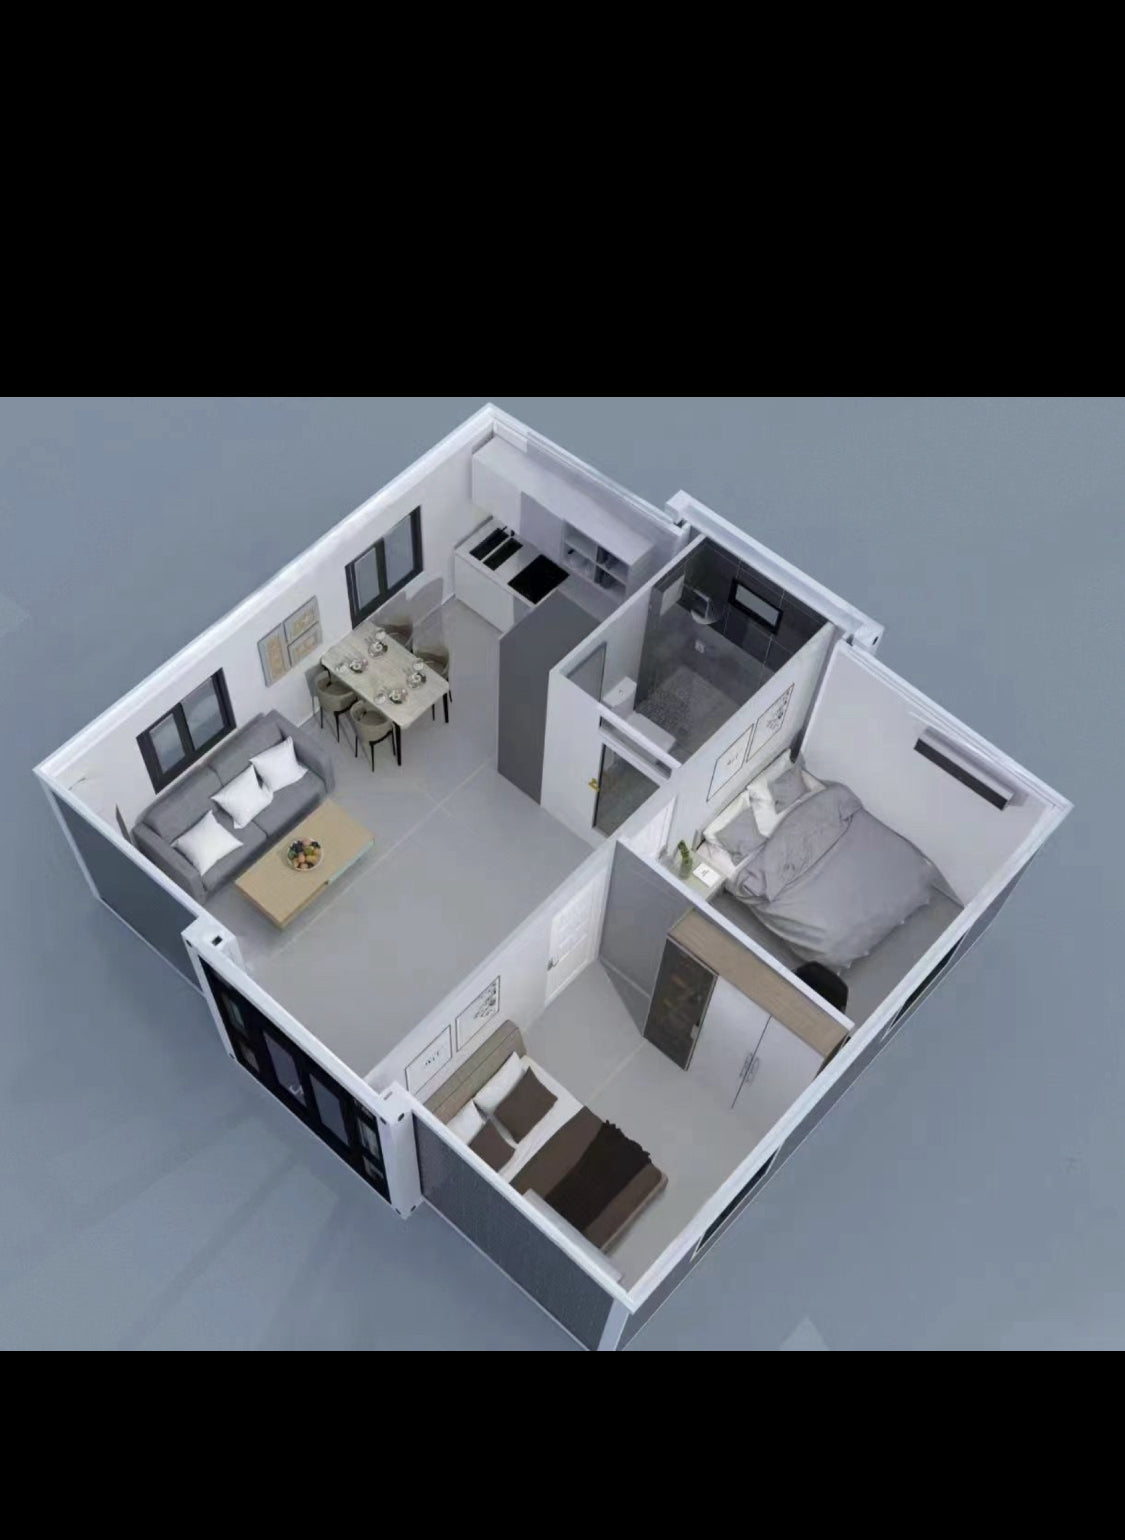 Luxo Home's Modular Prefab Masterpiece 2 Bedroom